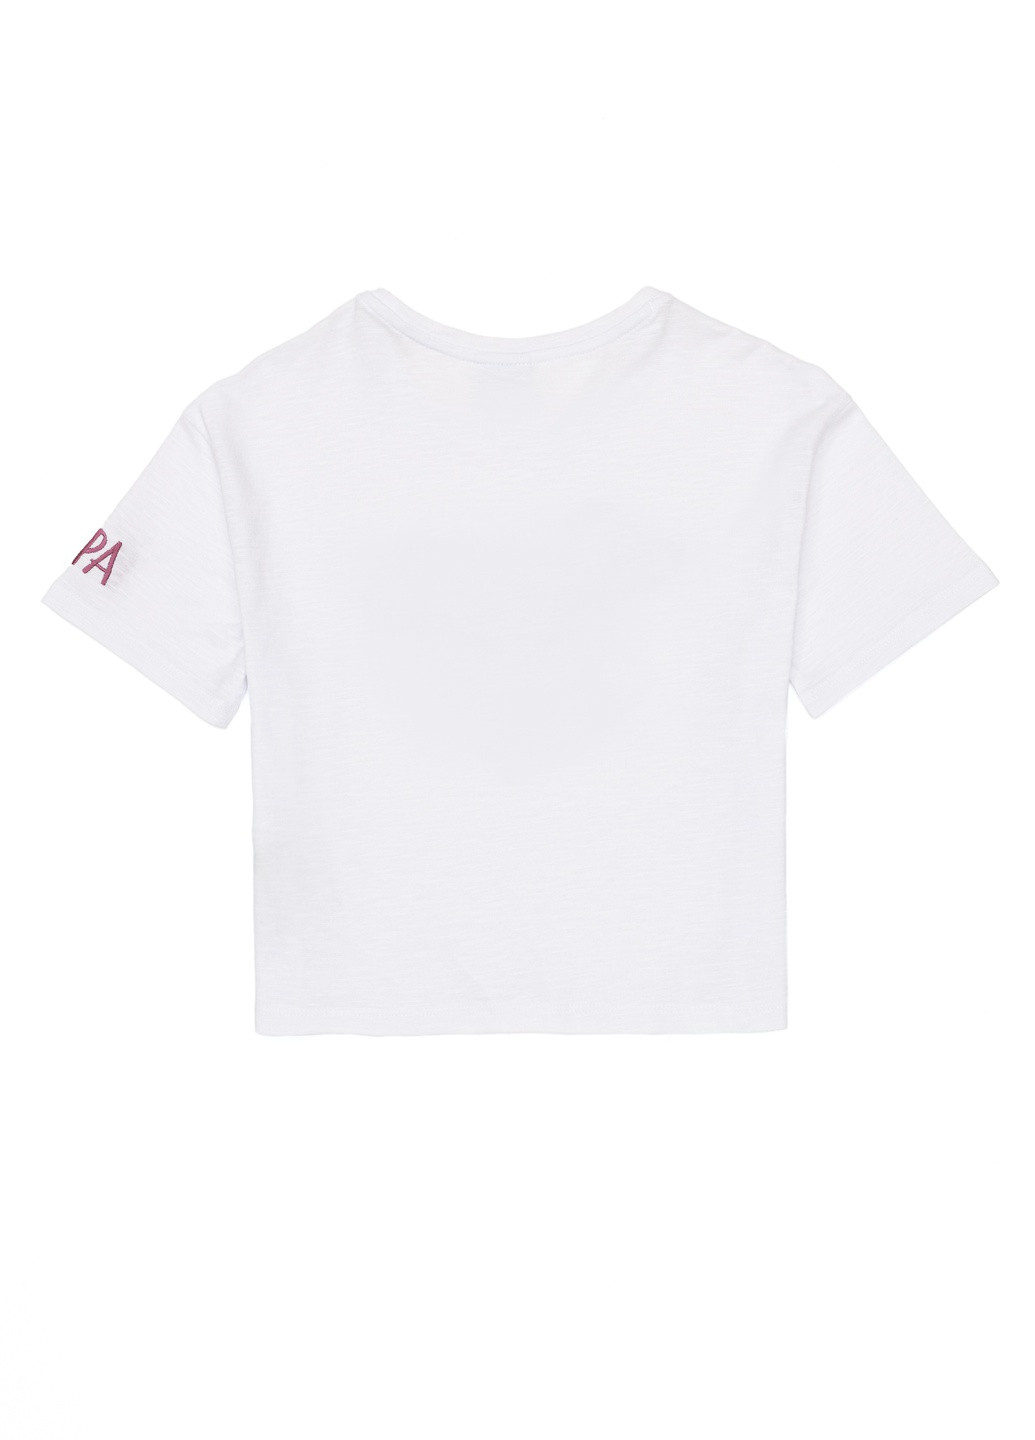 Белая детская футболка-футболка u.s/ polo assn. на девочку для девочки U.S. Polo Assn.